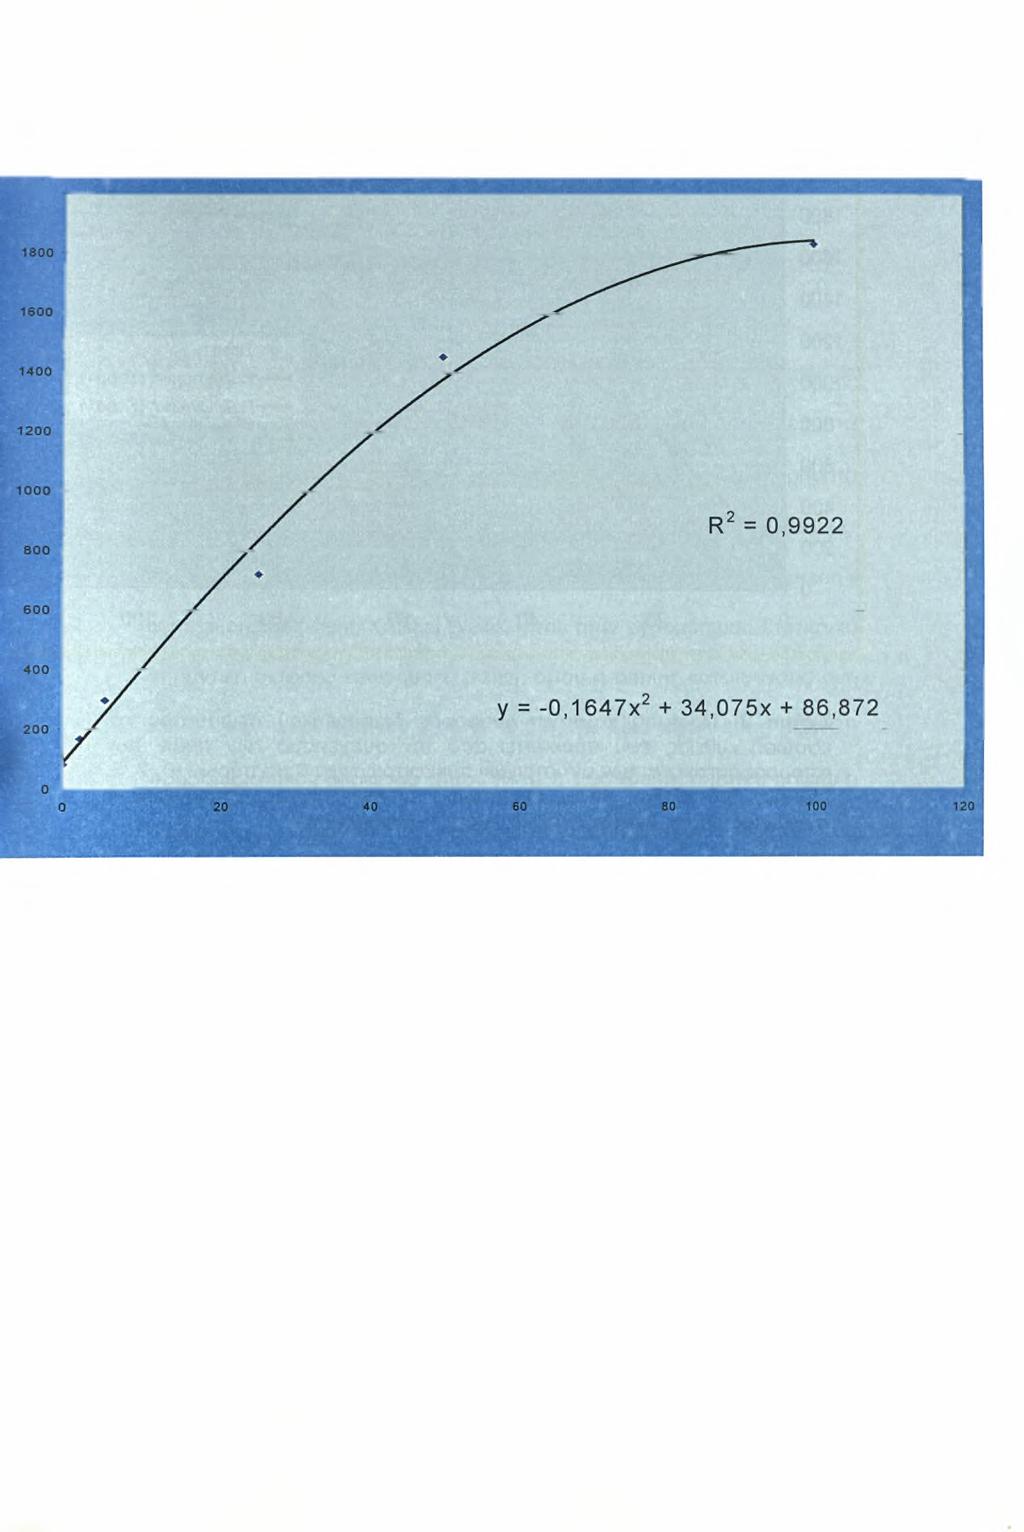 2000 Σχήμα 1: Πρότυπη καμπύλη αναφοράς και εξίσωση ευθείας που προκύπτει